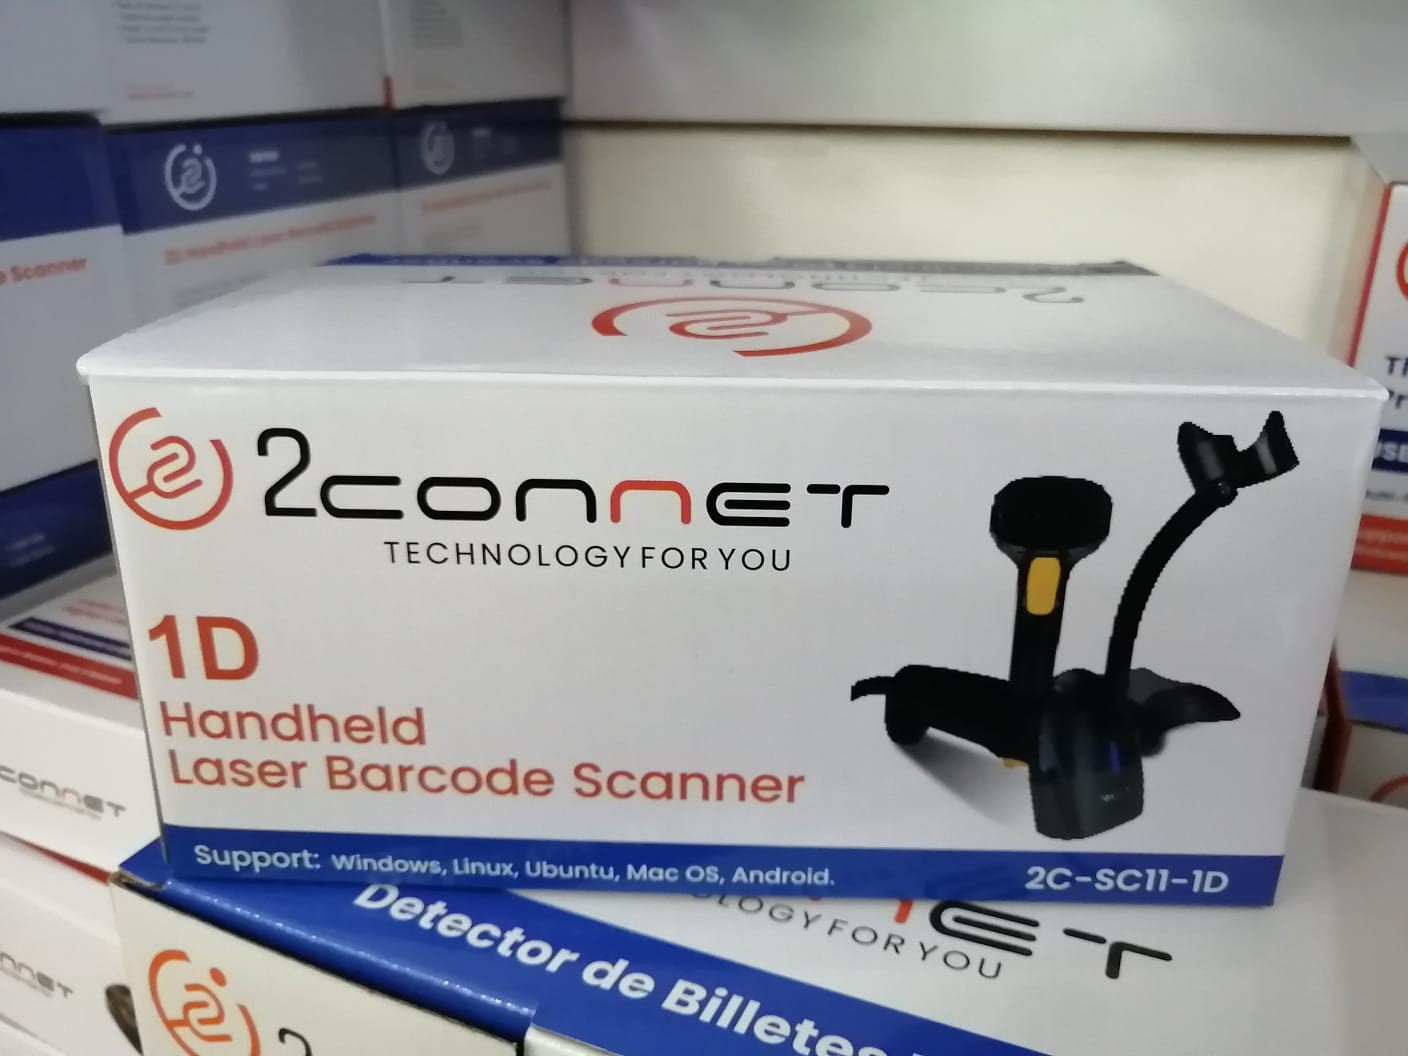 impresoras y scanners - Lector 1D Código Barras 2C-SC11-1D